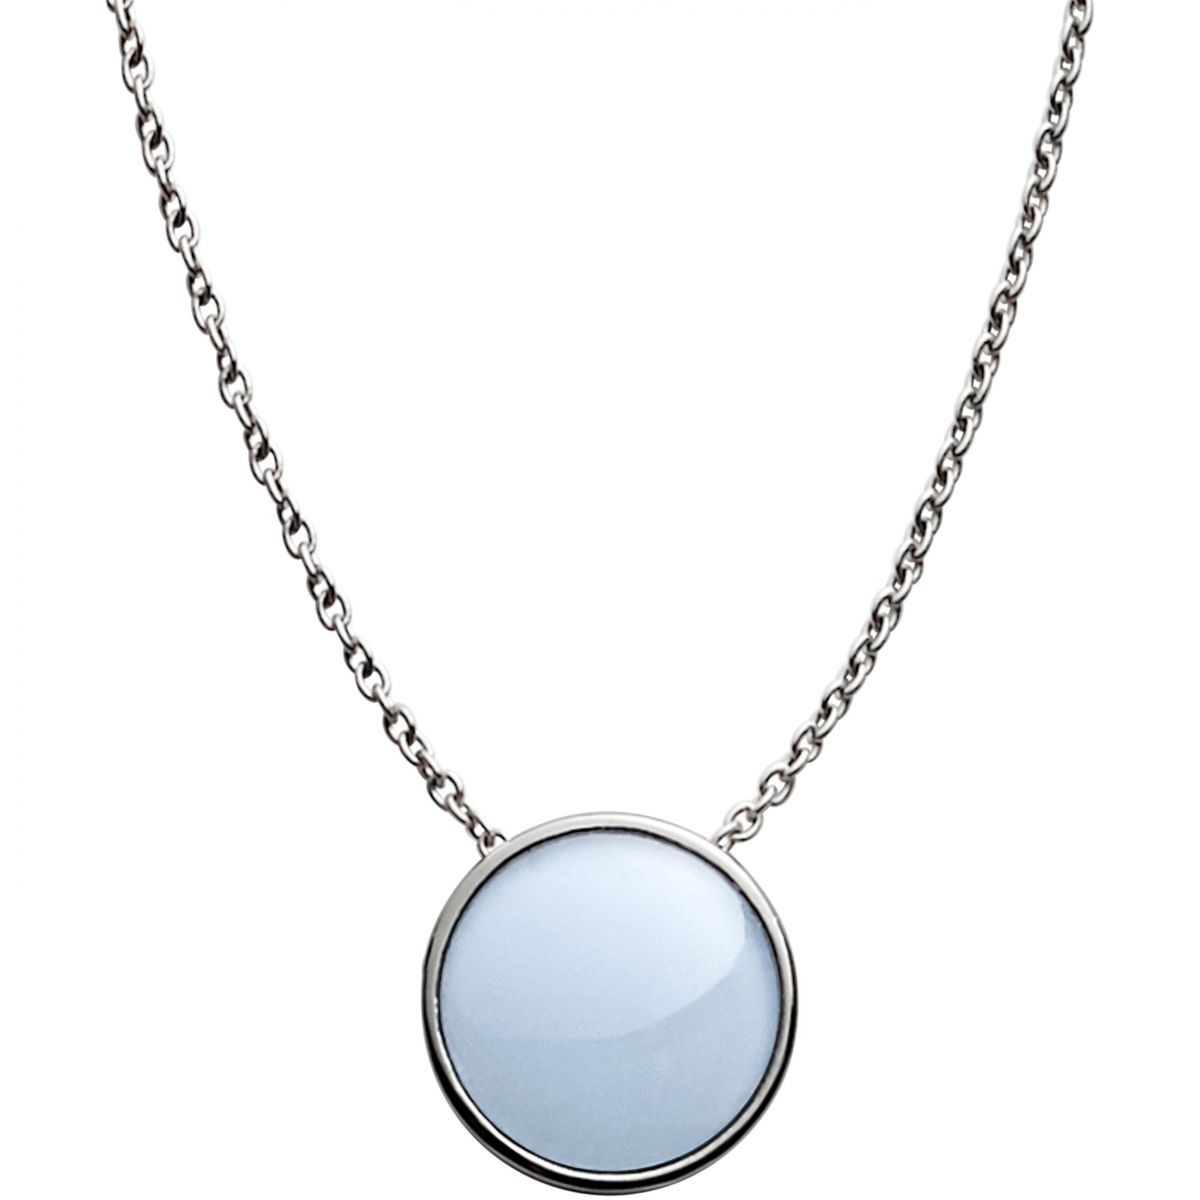 Skagen Women's Silver Jewelry by Watch Shop GOOFASH